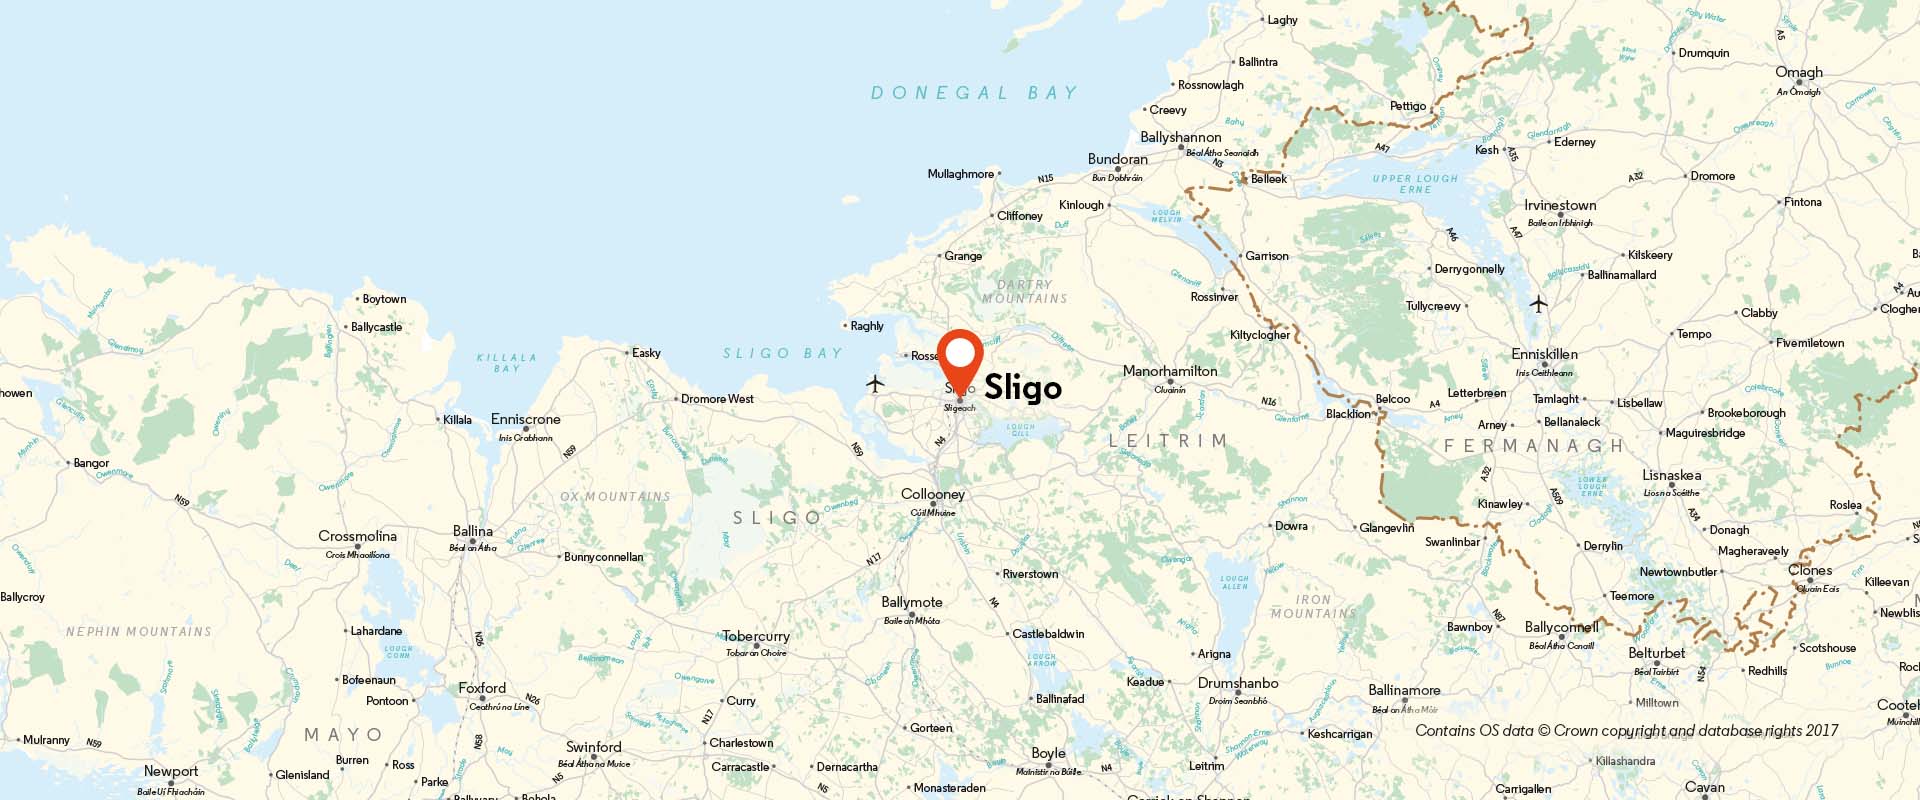 Sligo CoM location